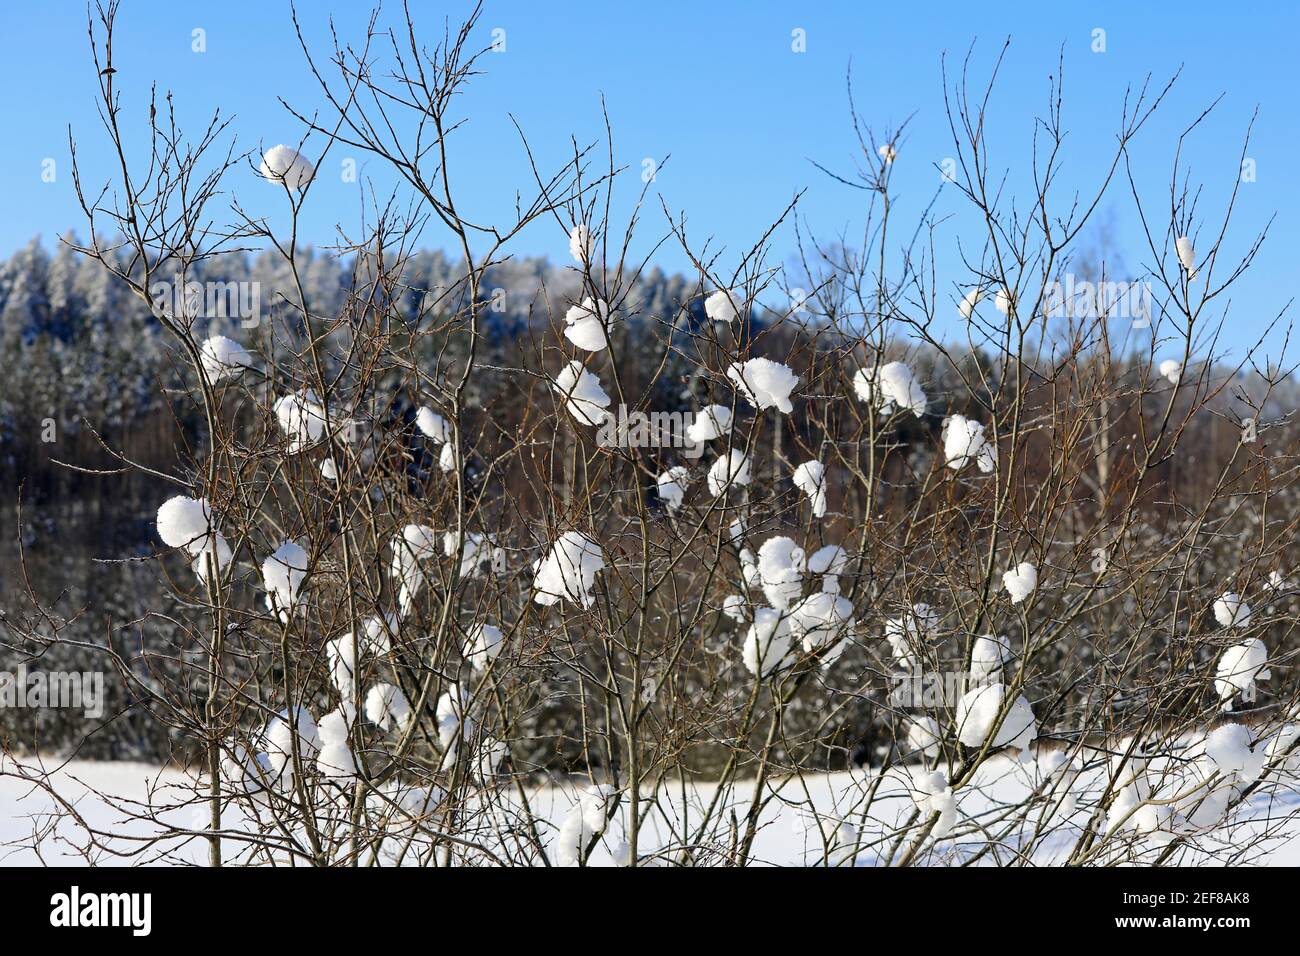 Boules de neige naturellement formées sur le saule, genre Salix, le jour ensoleillé de février. Finlande. 2021. Banque D'Images